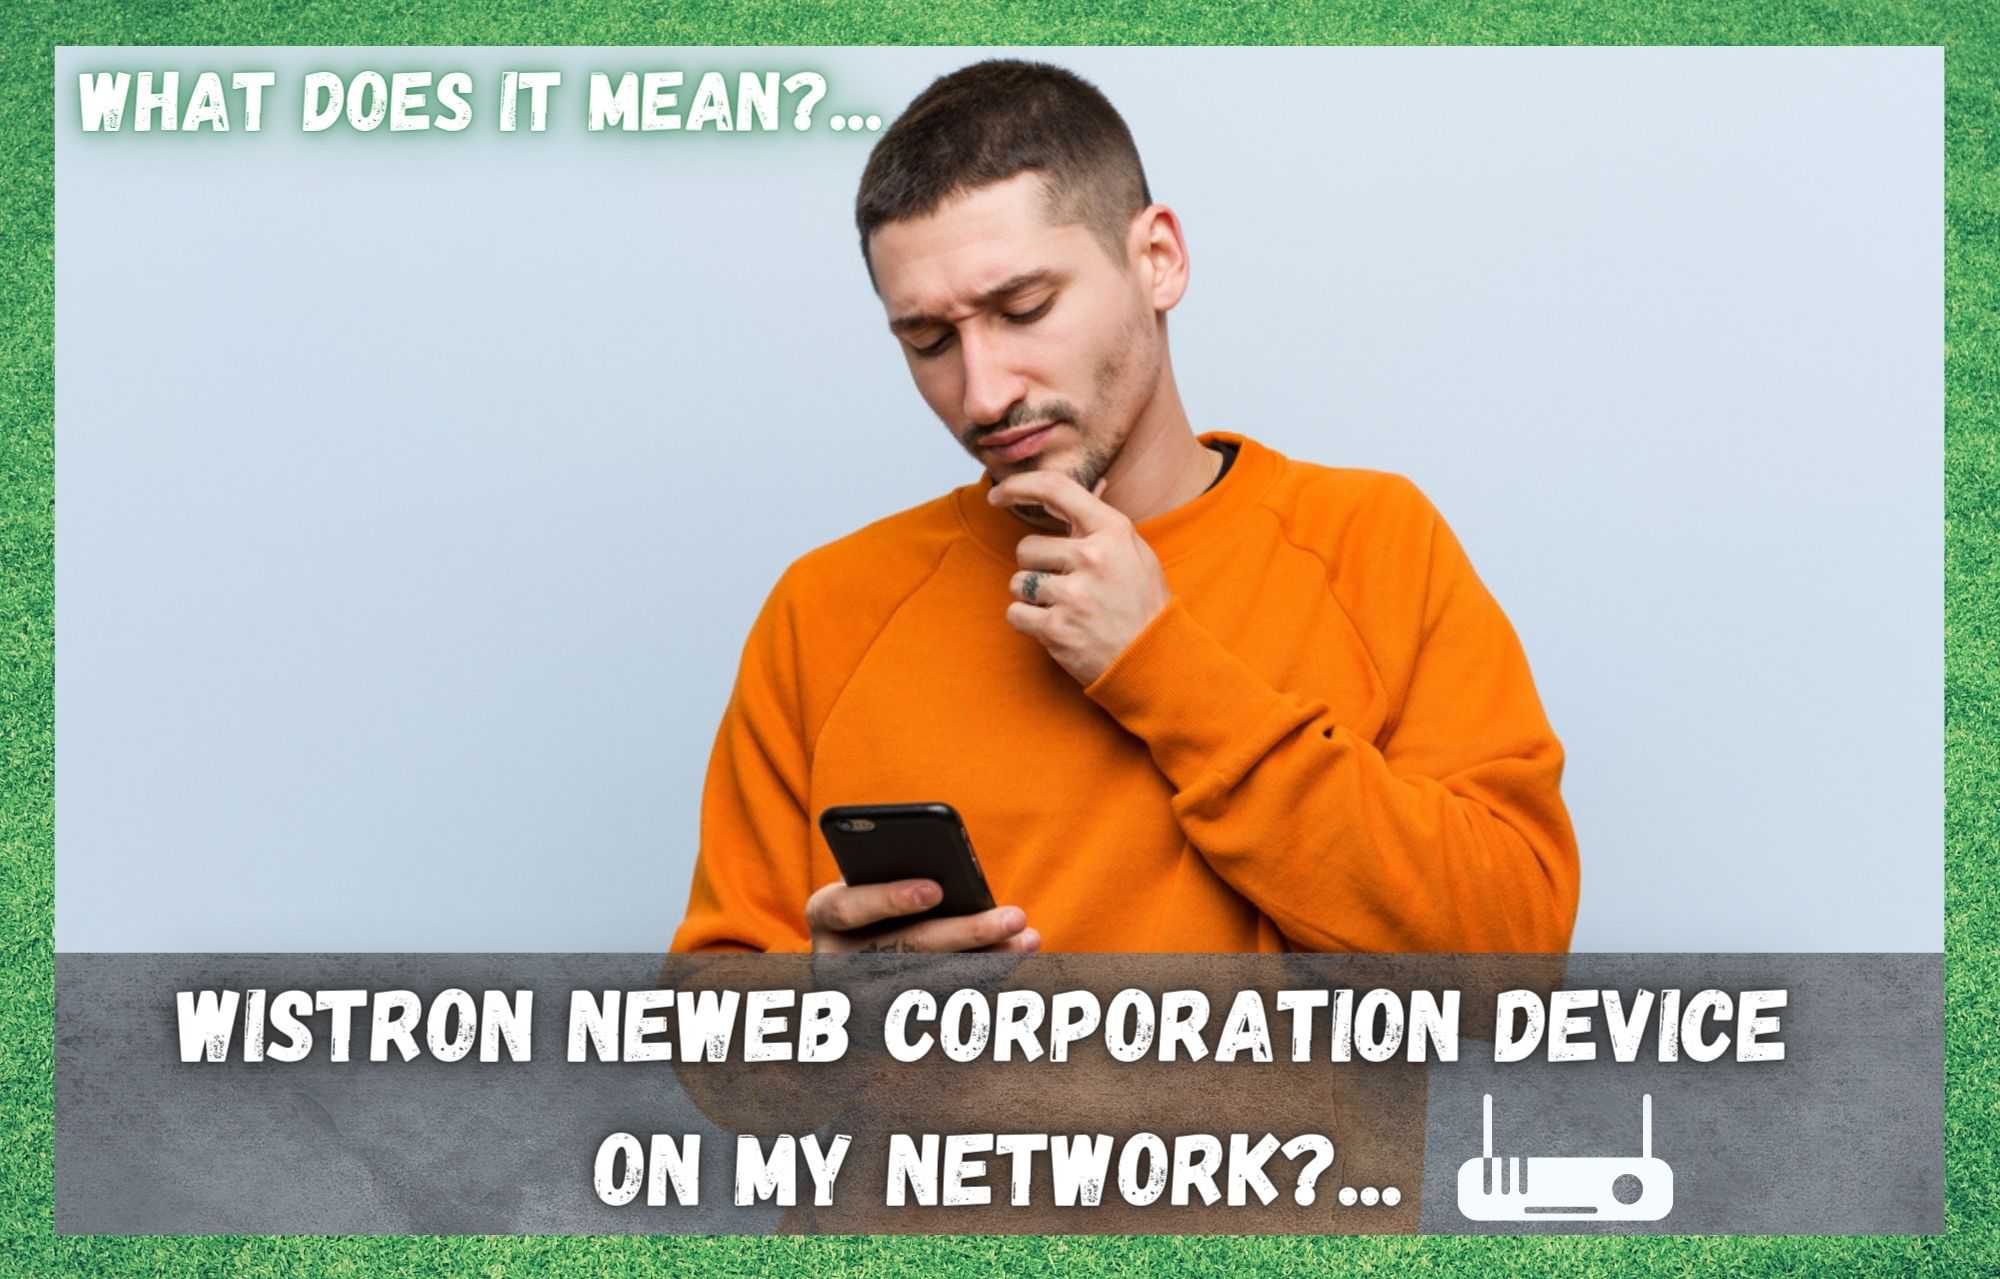 Wistron Newweb Corporation tæki á netinu mínu (útskýrt)